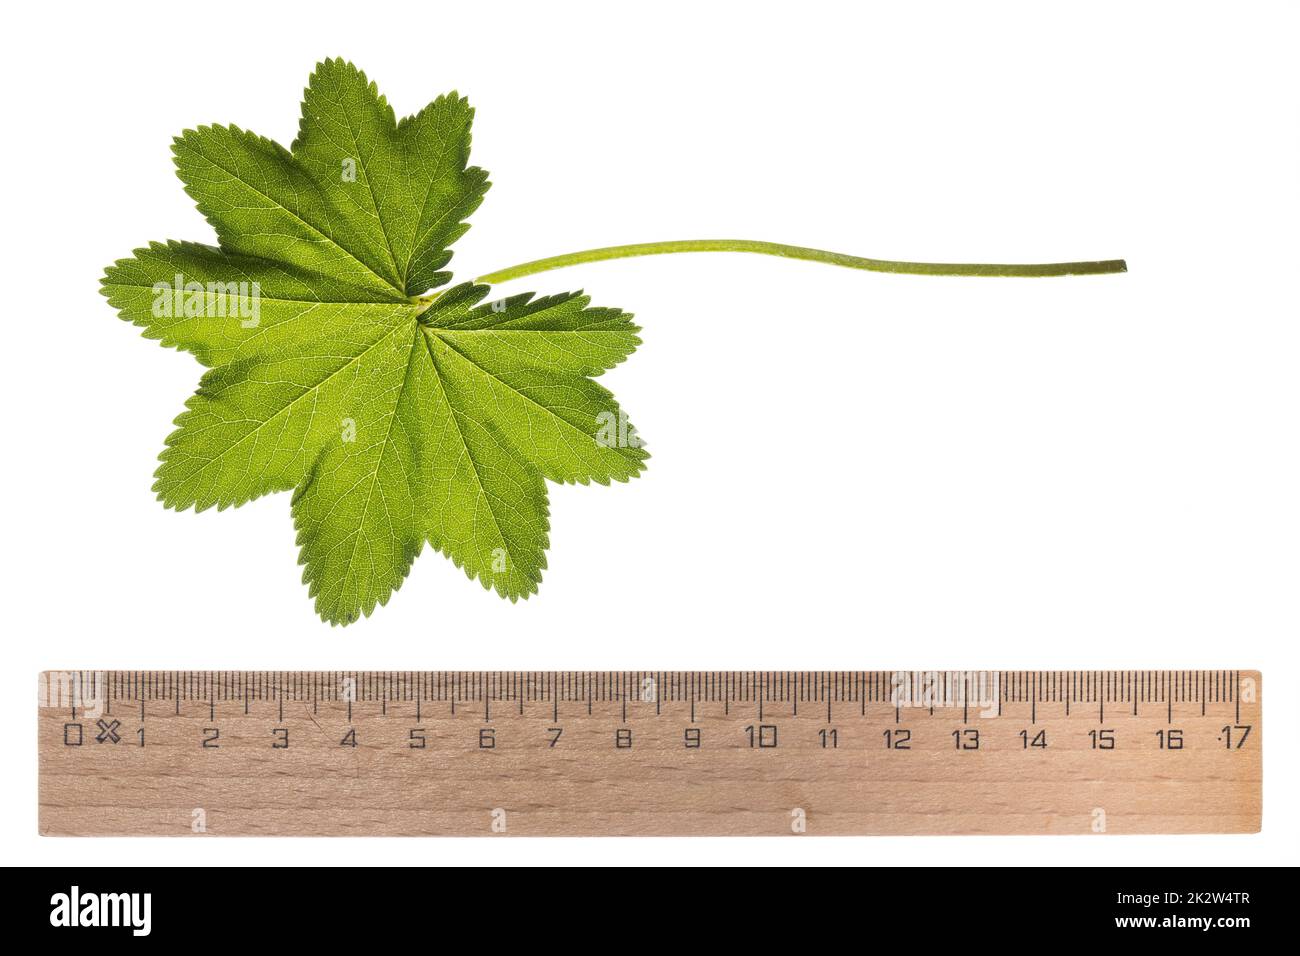 Gewöhnlicher Frauenmantel, Frauenmantel, Alchemilla vulgaris, Lady´s Mantle, Blatt, Blätter, leaf, leaves Stock Photo